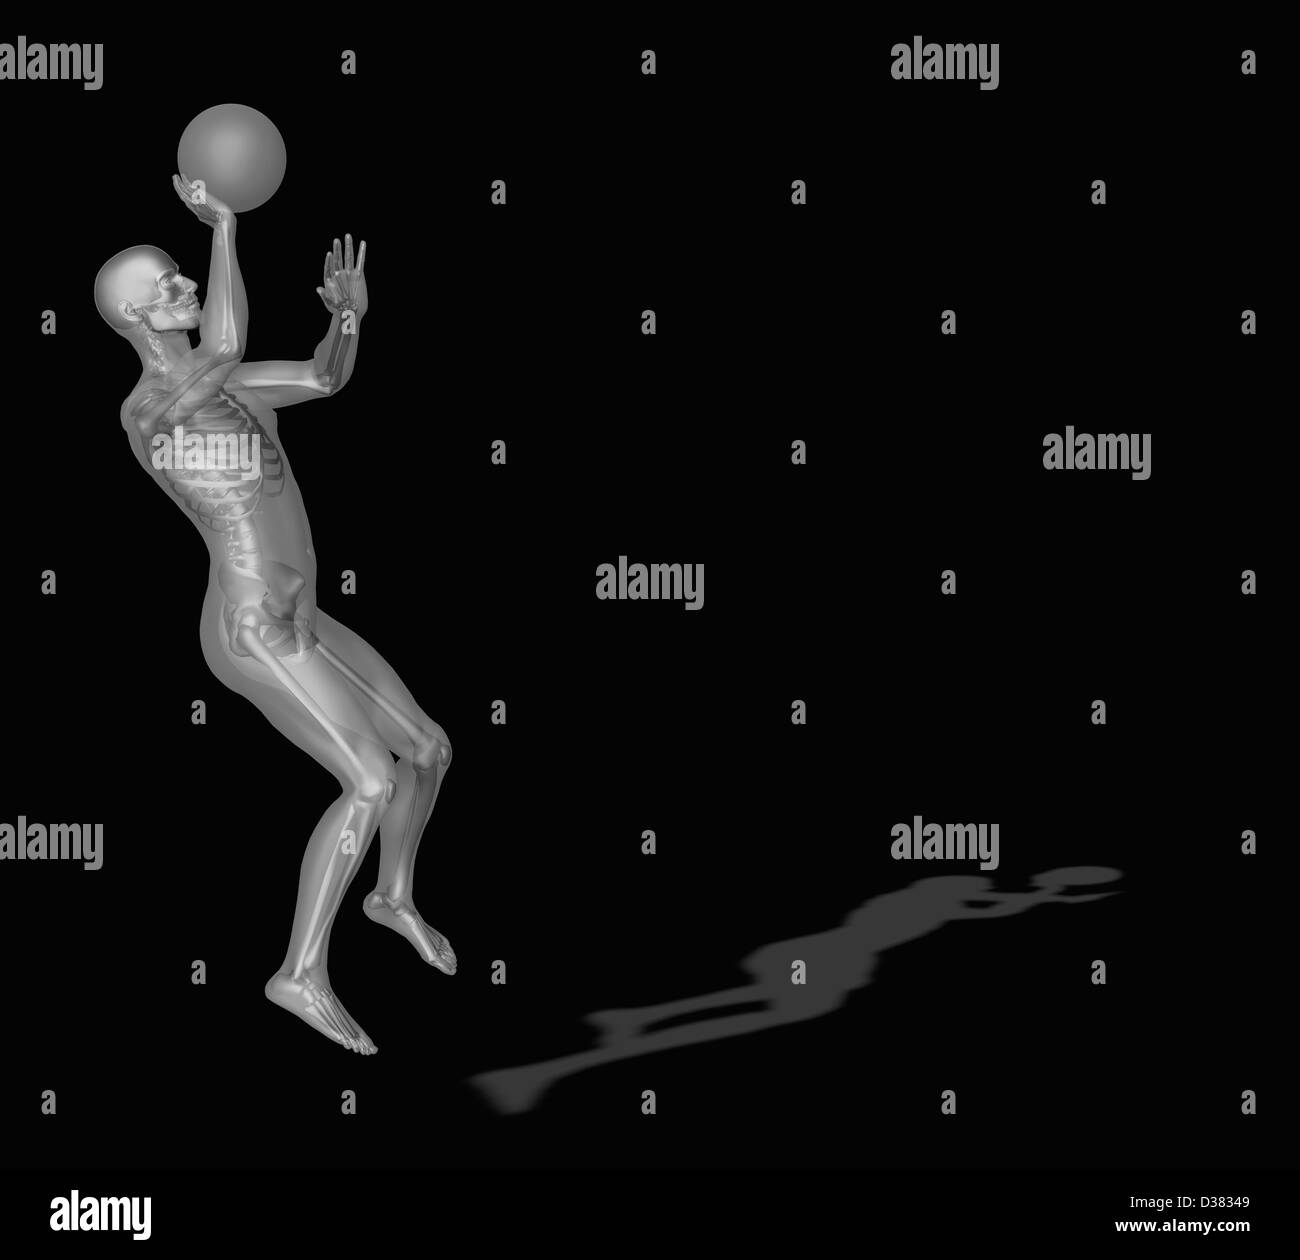 Digital erzeugte Bild der menschlichen Darstellung Basketball spielen Stockfoto